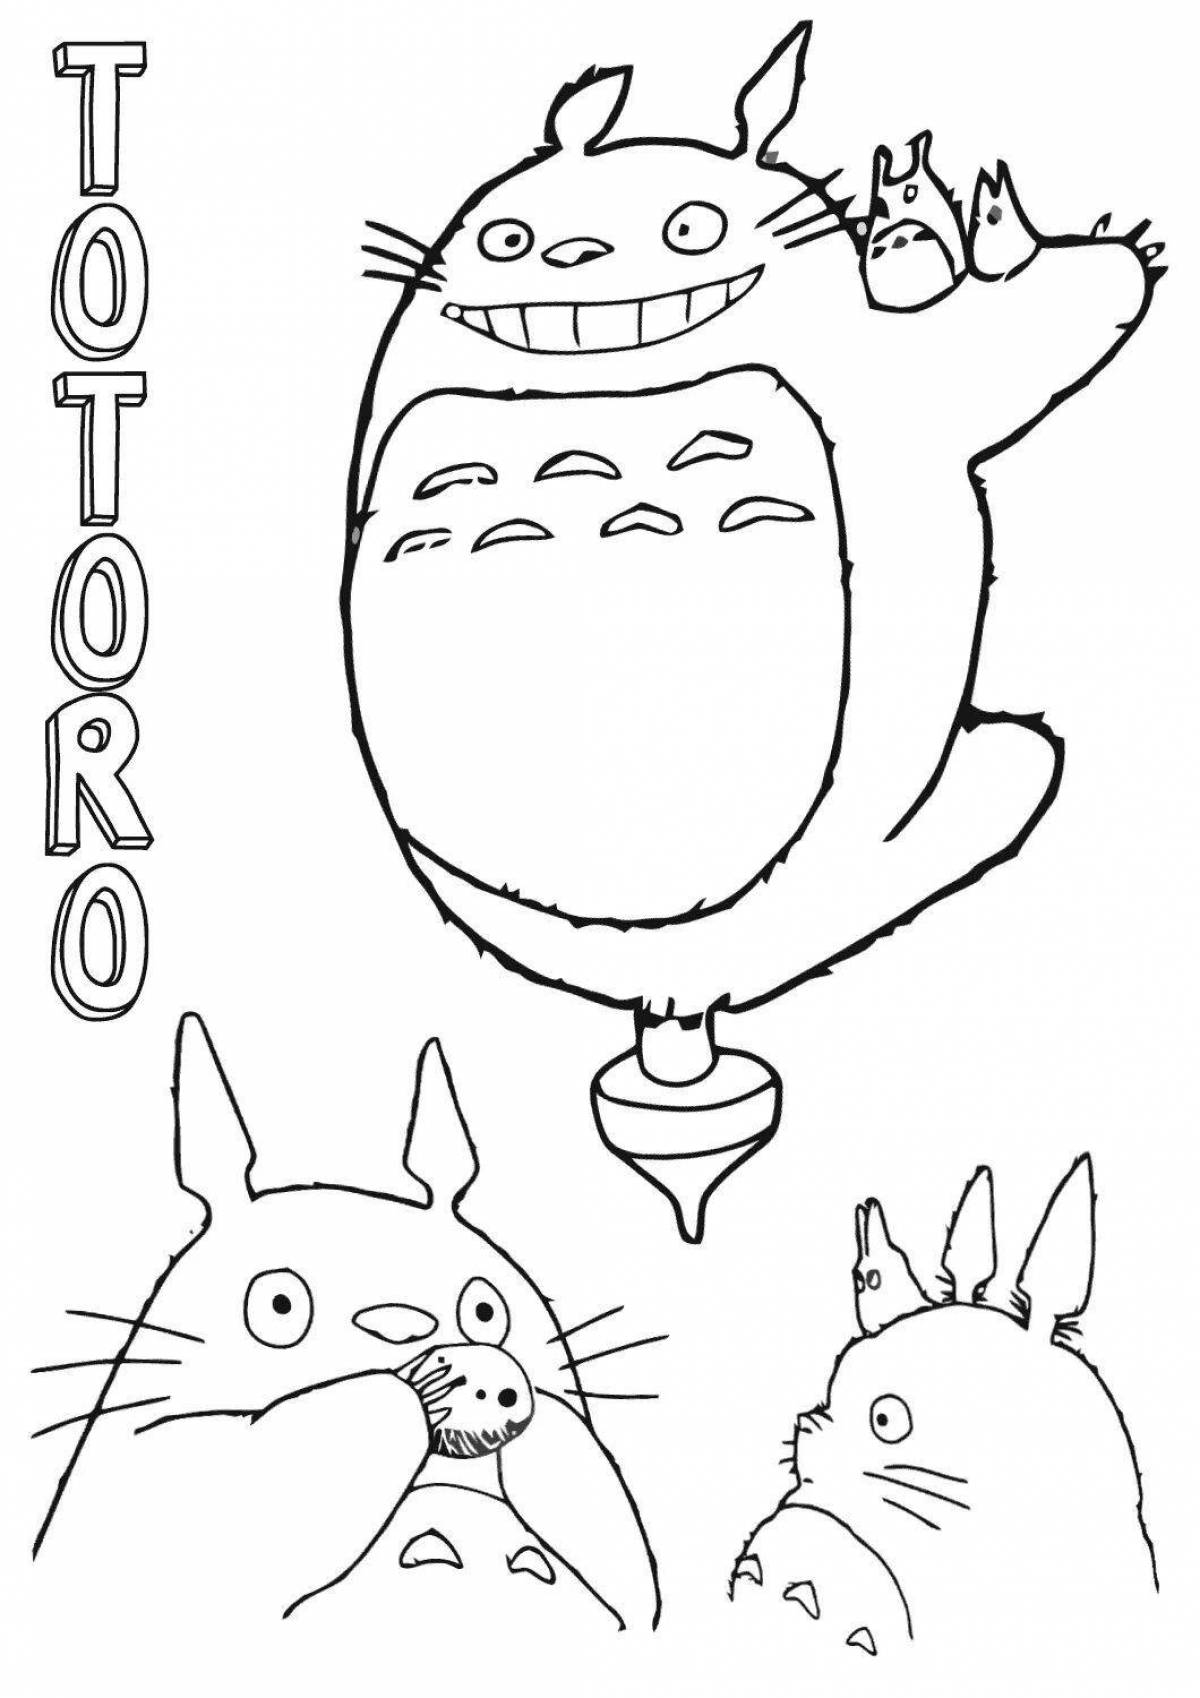 Fun totoro coloring book